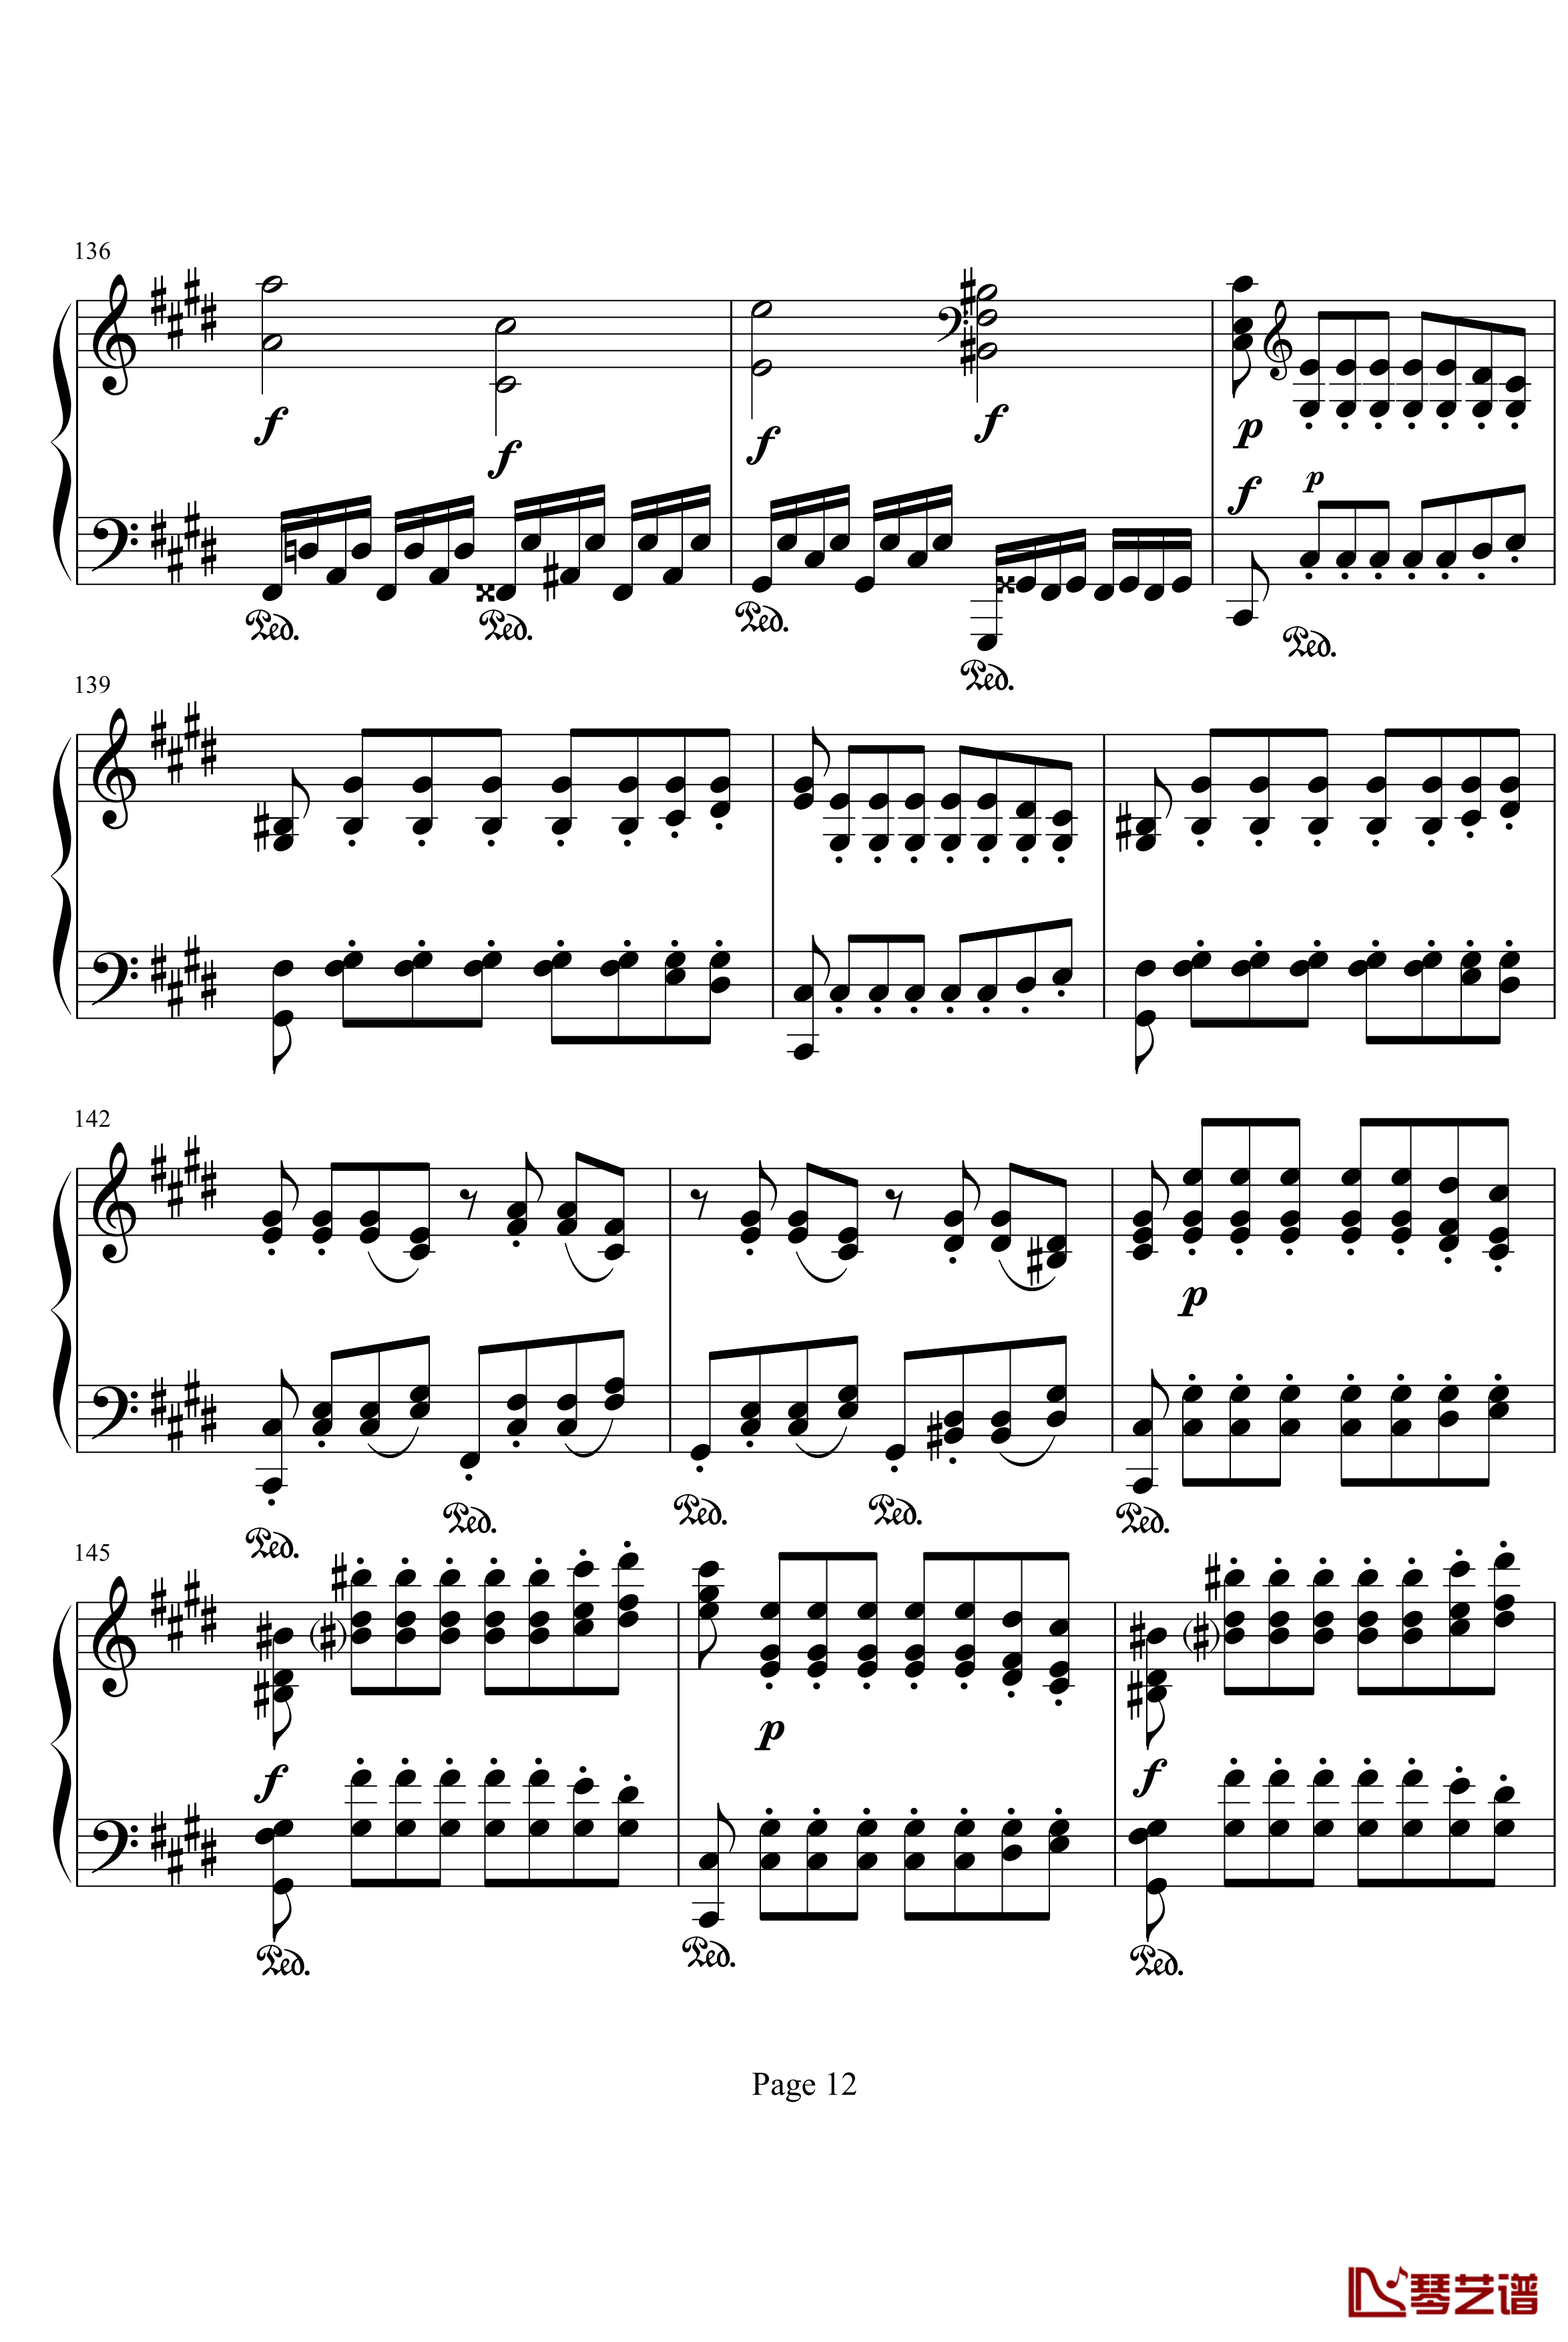 月光奏明曲钢琴谱-作品27之2-贝多芬-beethoven12